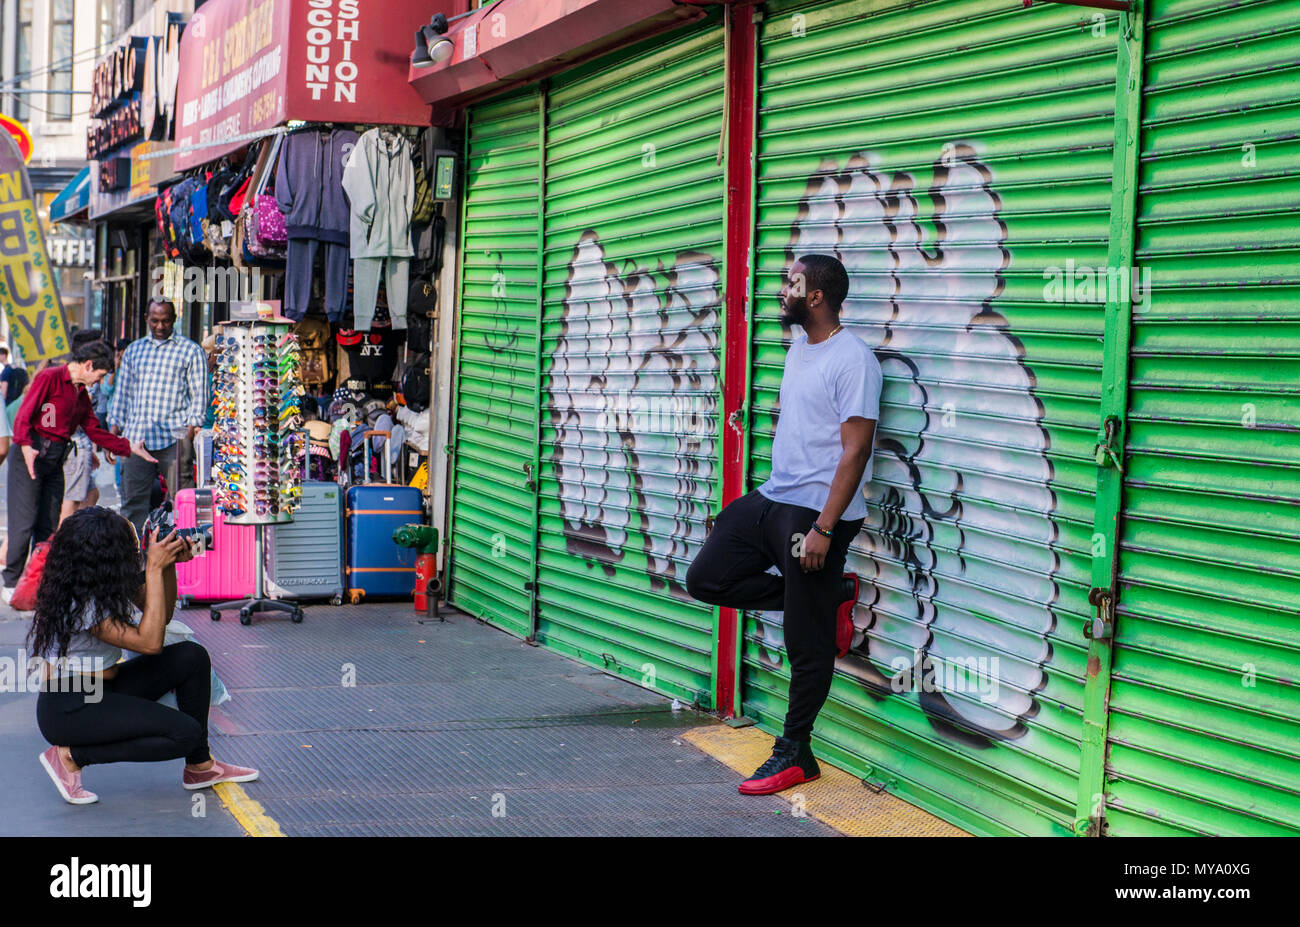 Mann gegen Graffiti bedeckt Metall Verschluss schiefen, posiert für die Fotografen, New York City, USA Stockfoto